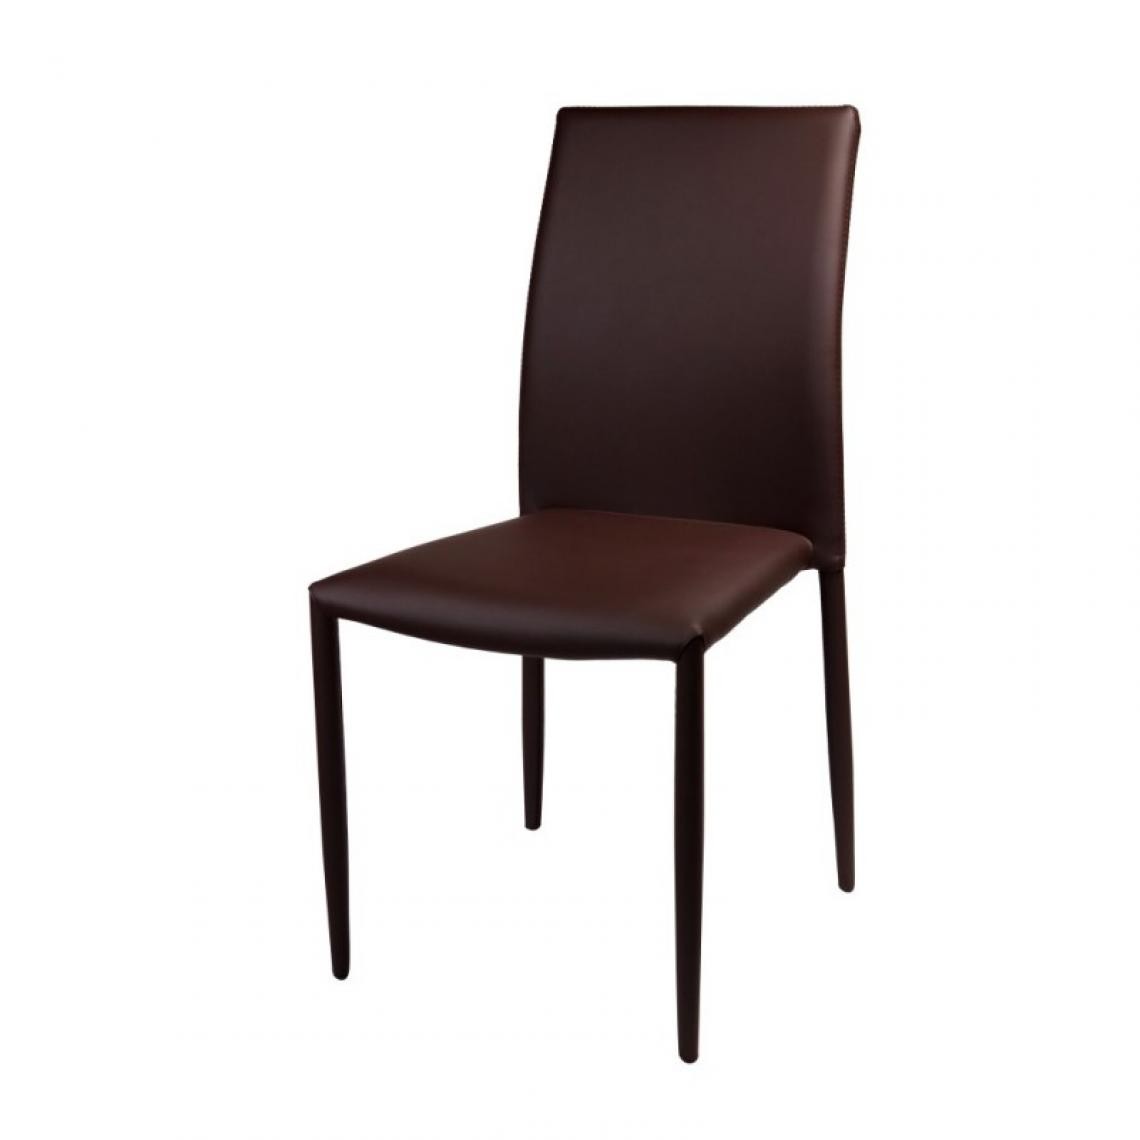 Webmarketpoint - Chaise de salon Kristin marron 53 x 44 x 90 h - Chaises